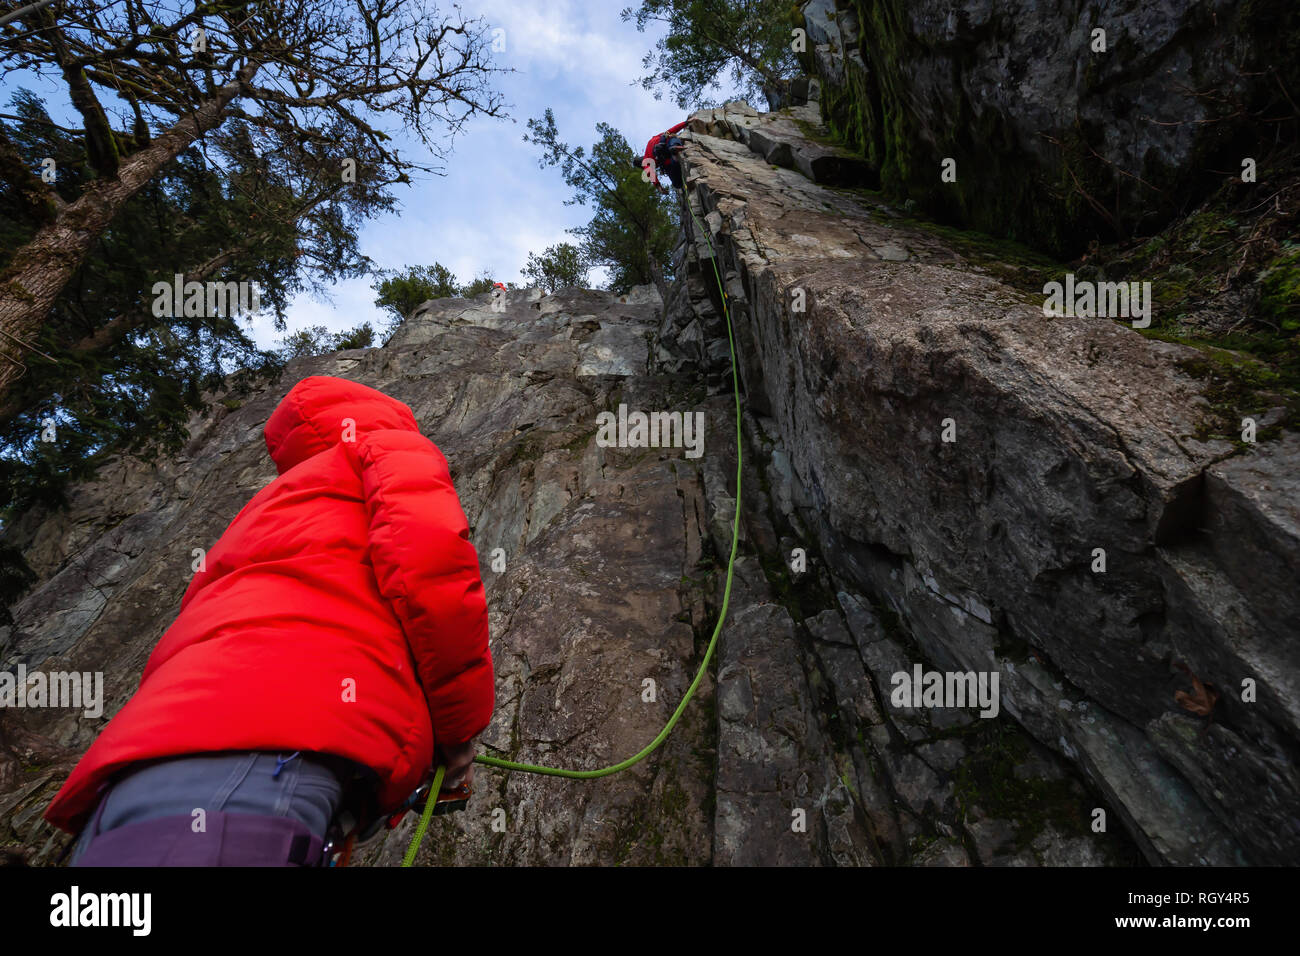 Kletterer sichern, während Ihr Partner Klettern am Rand der Klippe ist. In Area 44 in der Nähe von Squamish und Whistler, nördlich von Vancouver, BC, können Stockfoto